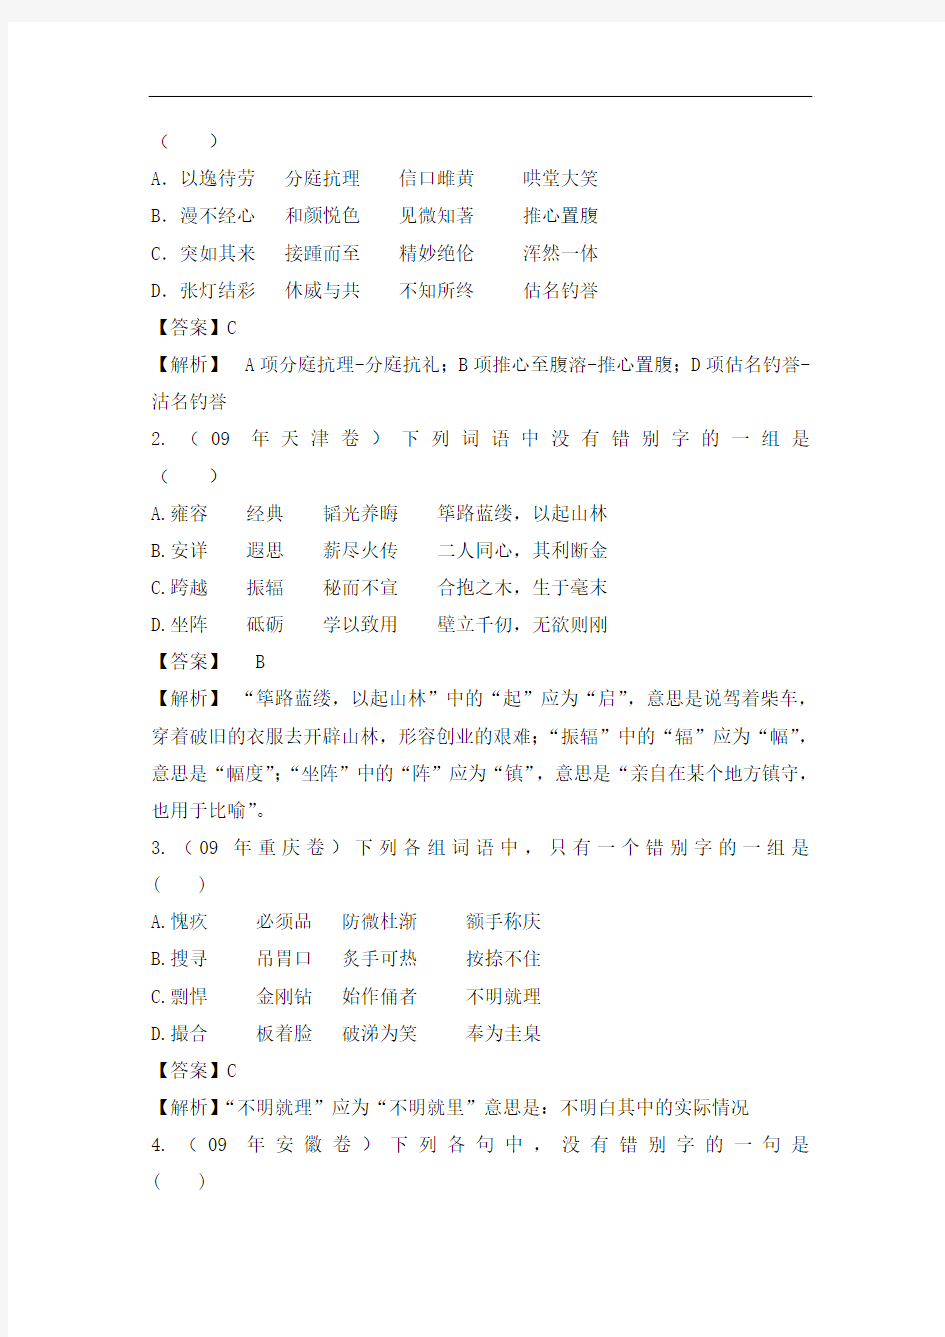 【2011年高考语文备考精品】第二单元 识记现代汉语普通话常用字的字形